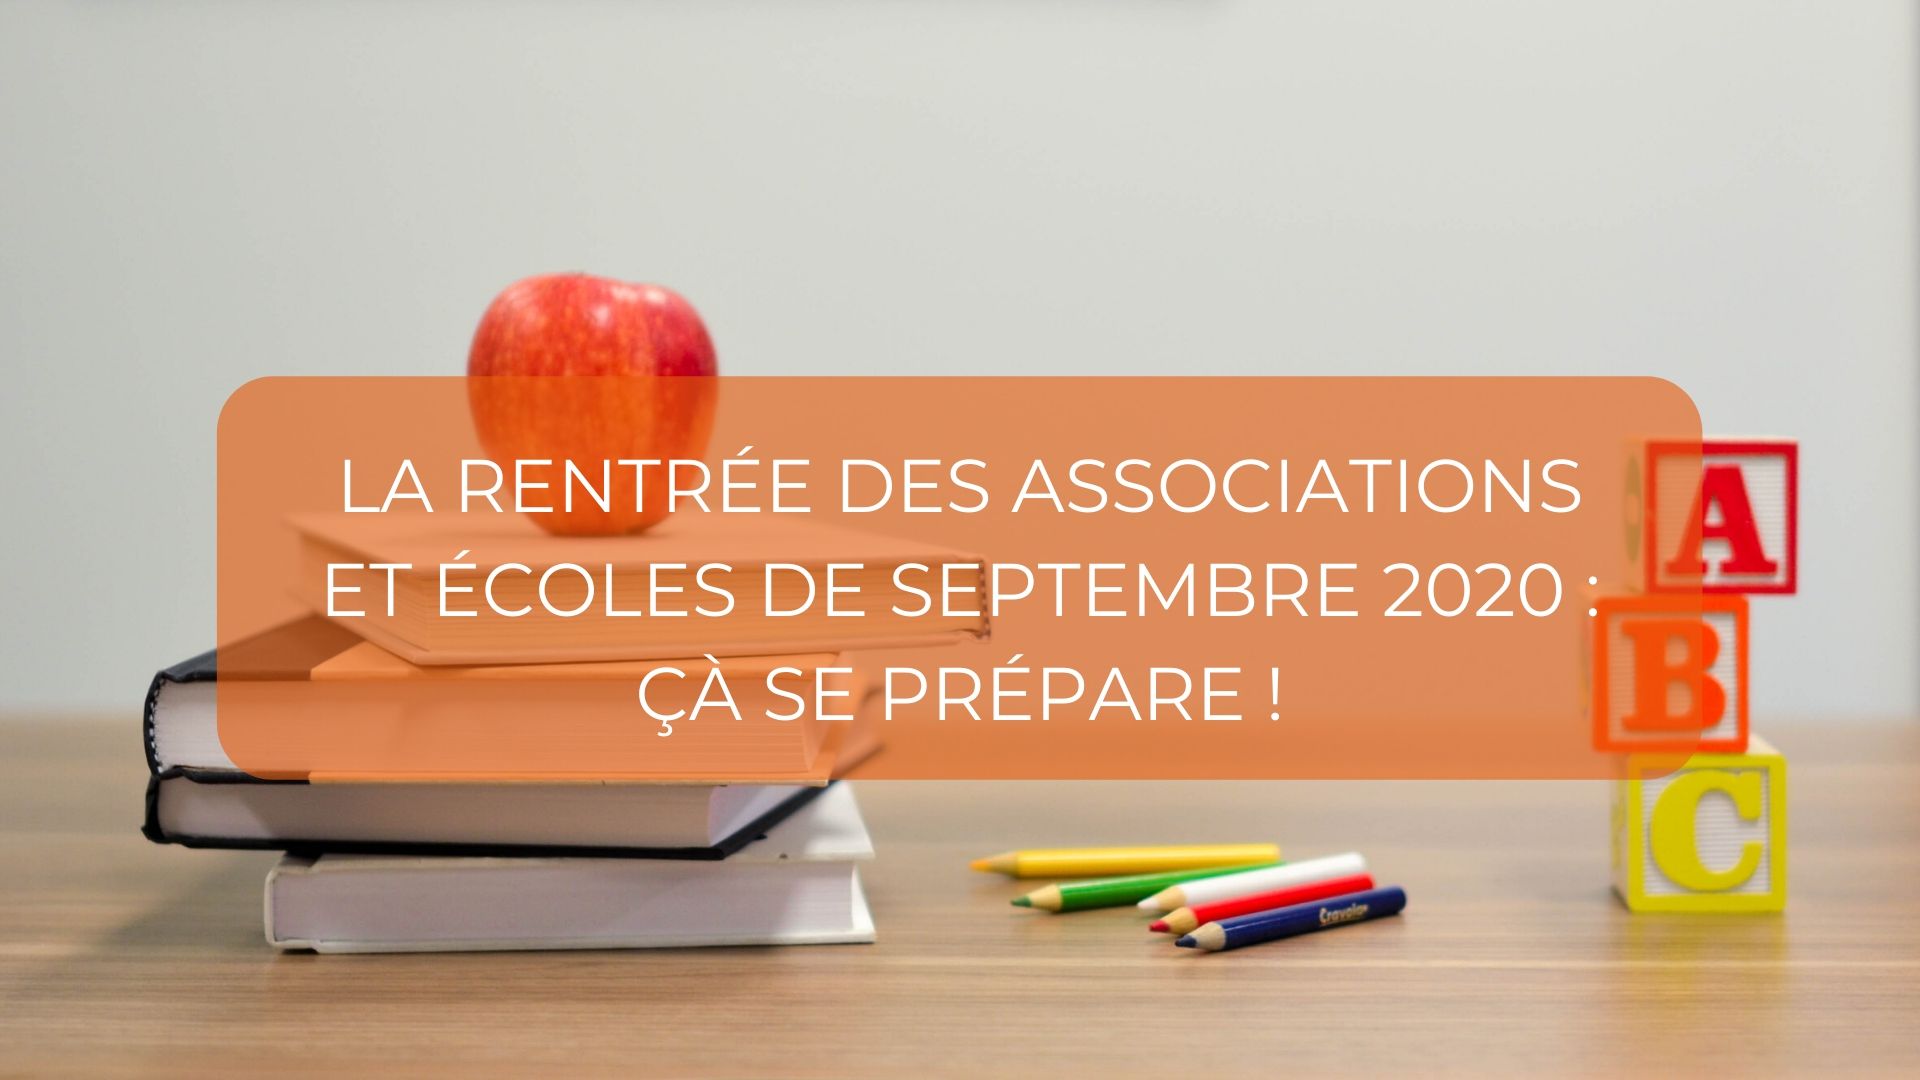 La rentrée des associations et écoles de septembre 2020 : Cà se prépare !